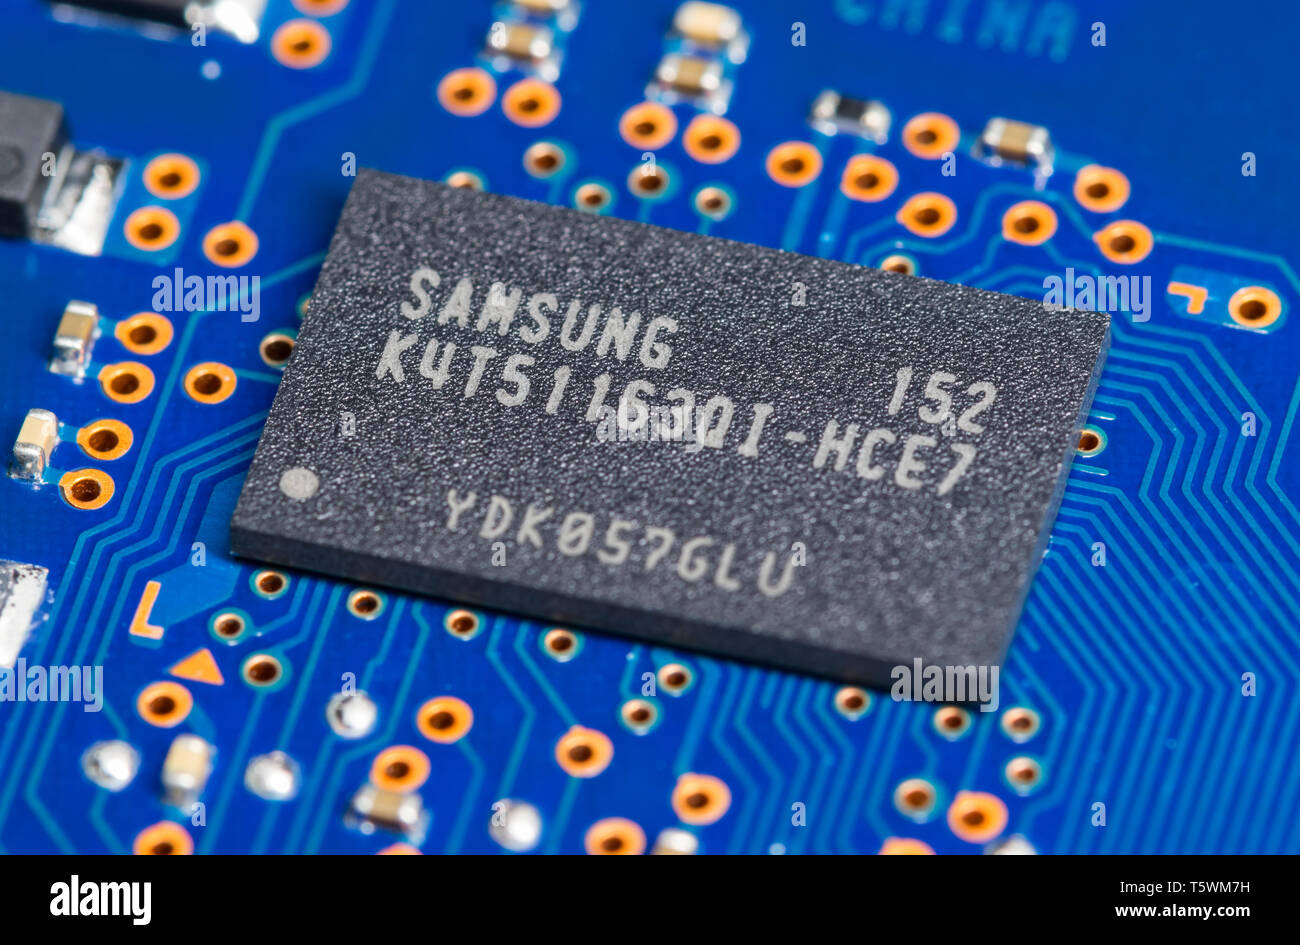 Mémoire SDRAM DDR2 Samsung Chip dans un paquet AJBF monté sur un circuit imprimé pour un disque dur. Banque D'Images